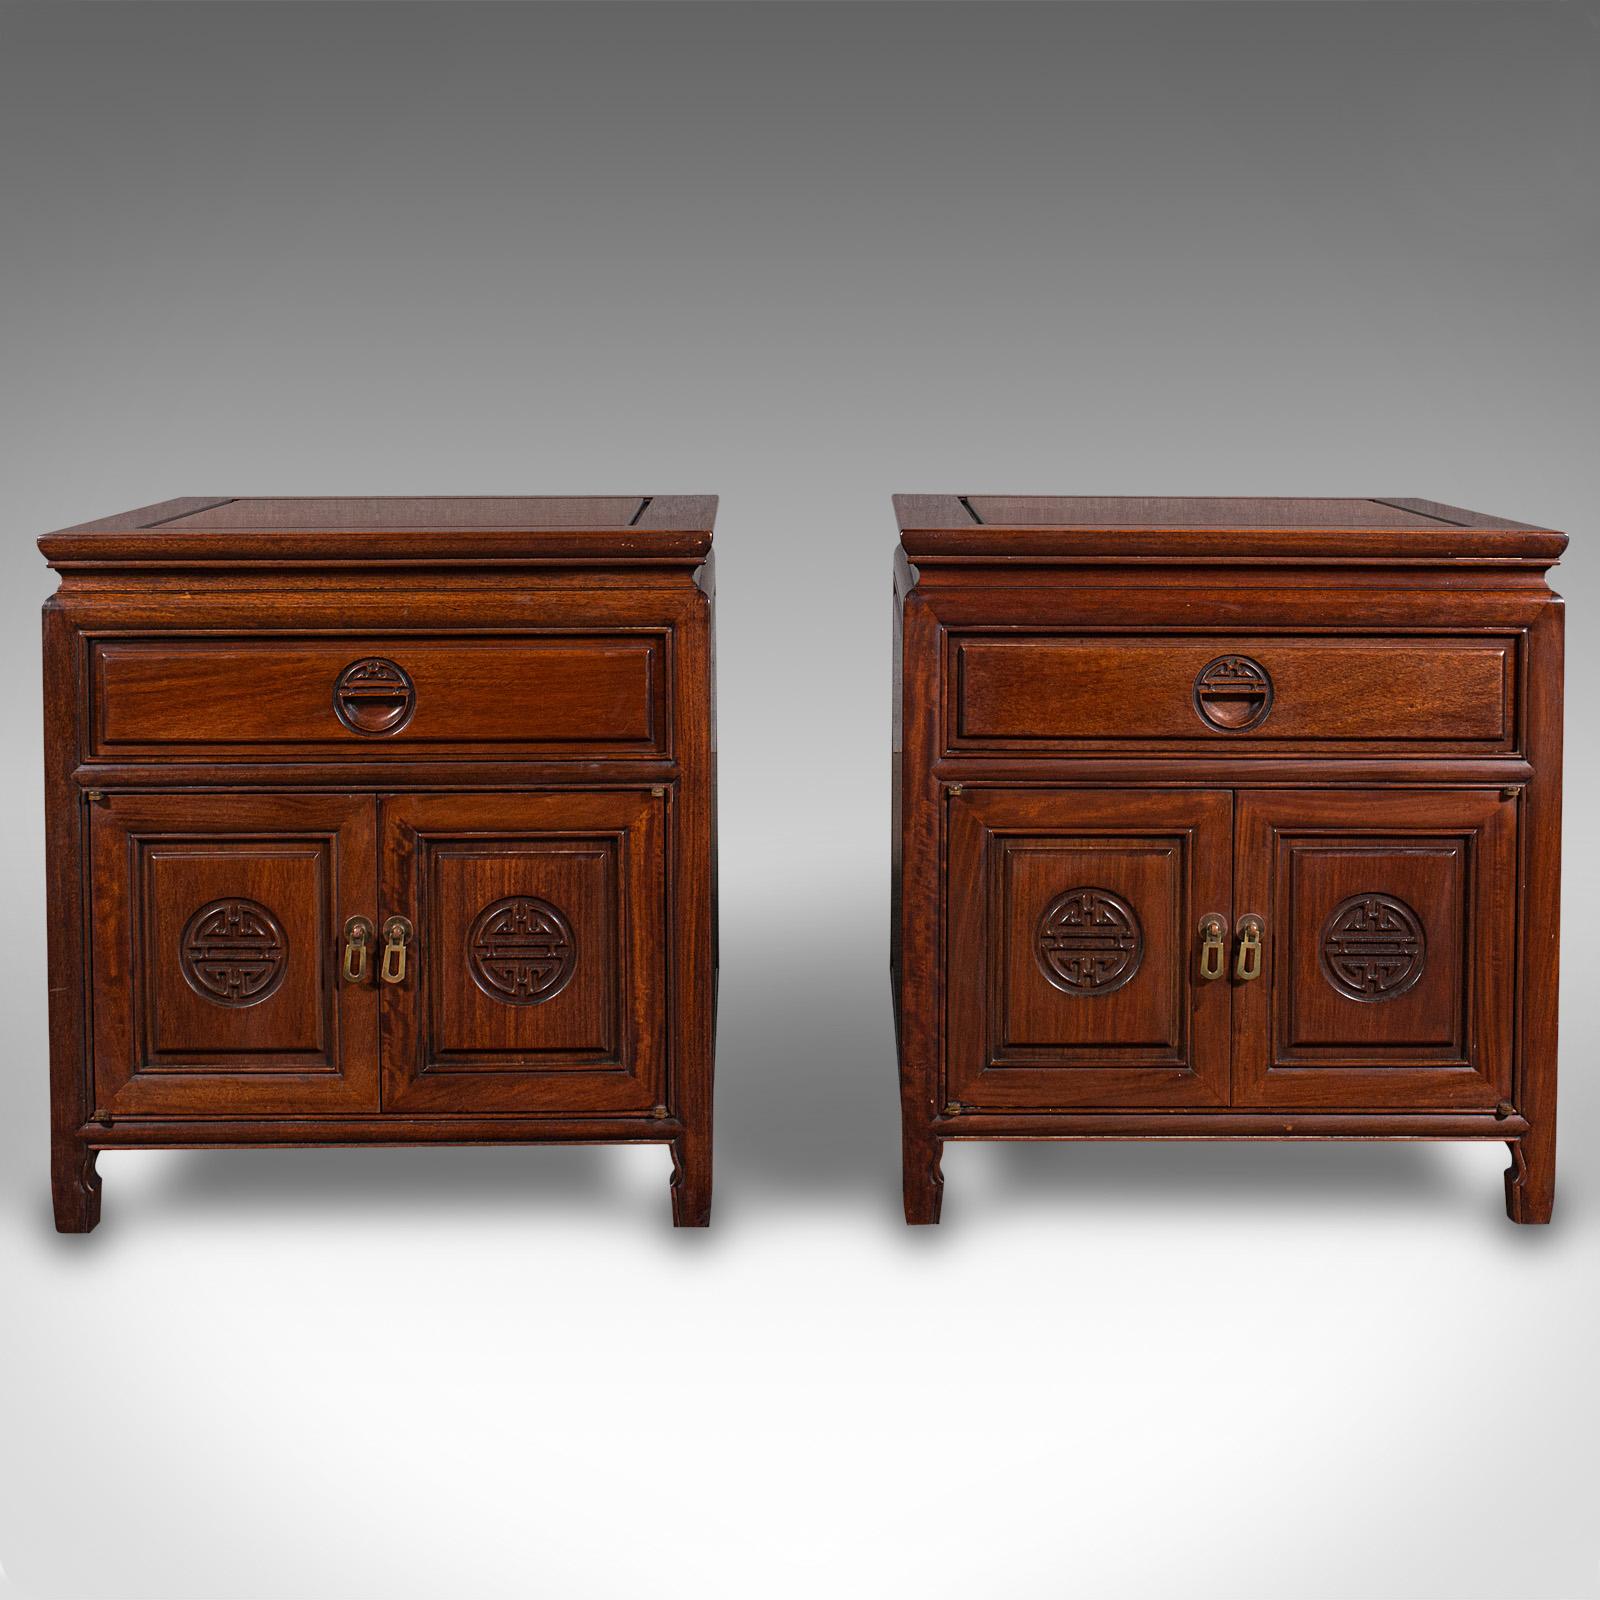 Il s'agit d'une paire de tables de chevet vintage. Une armoire basse asiatique en bois de rose, datant de la fin de la période Art Déco, vers 1940.

De proportions agréablement carrées et de qualité attrayante.
Présente une patine d'usage